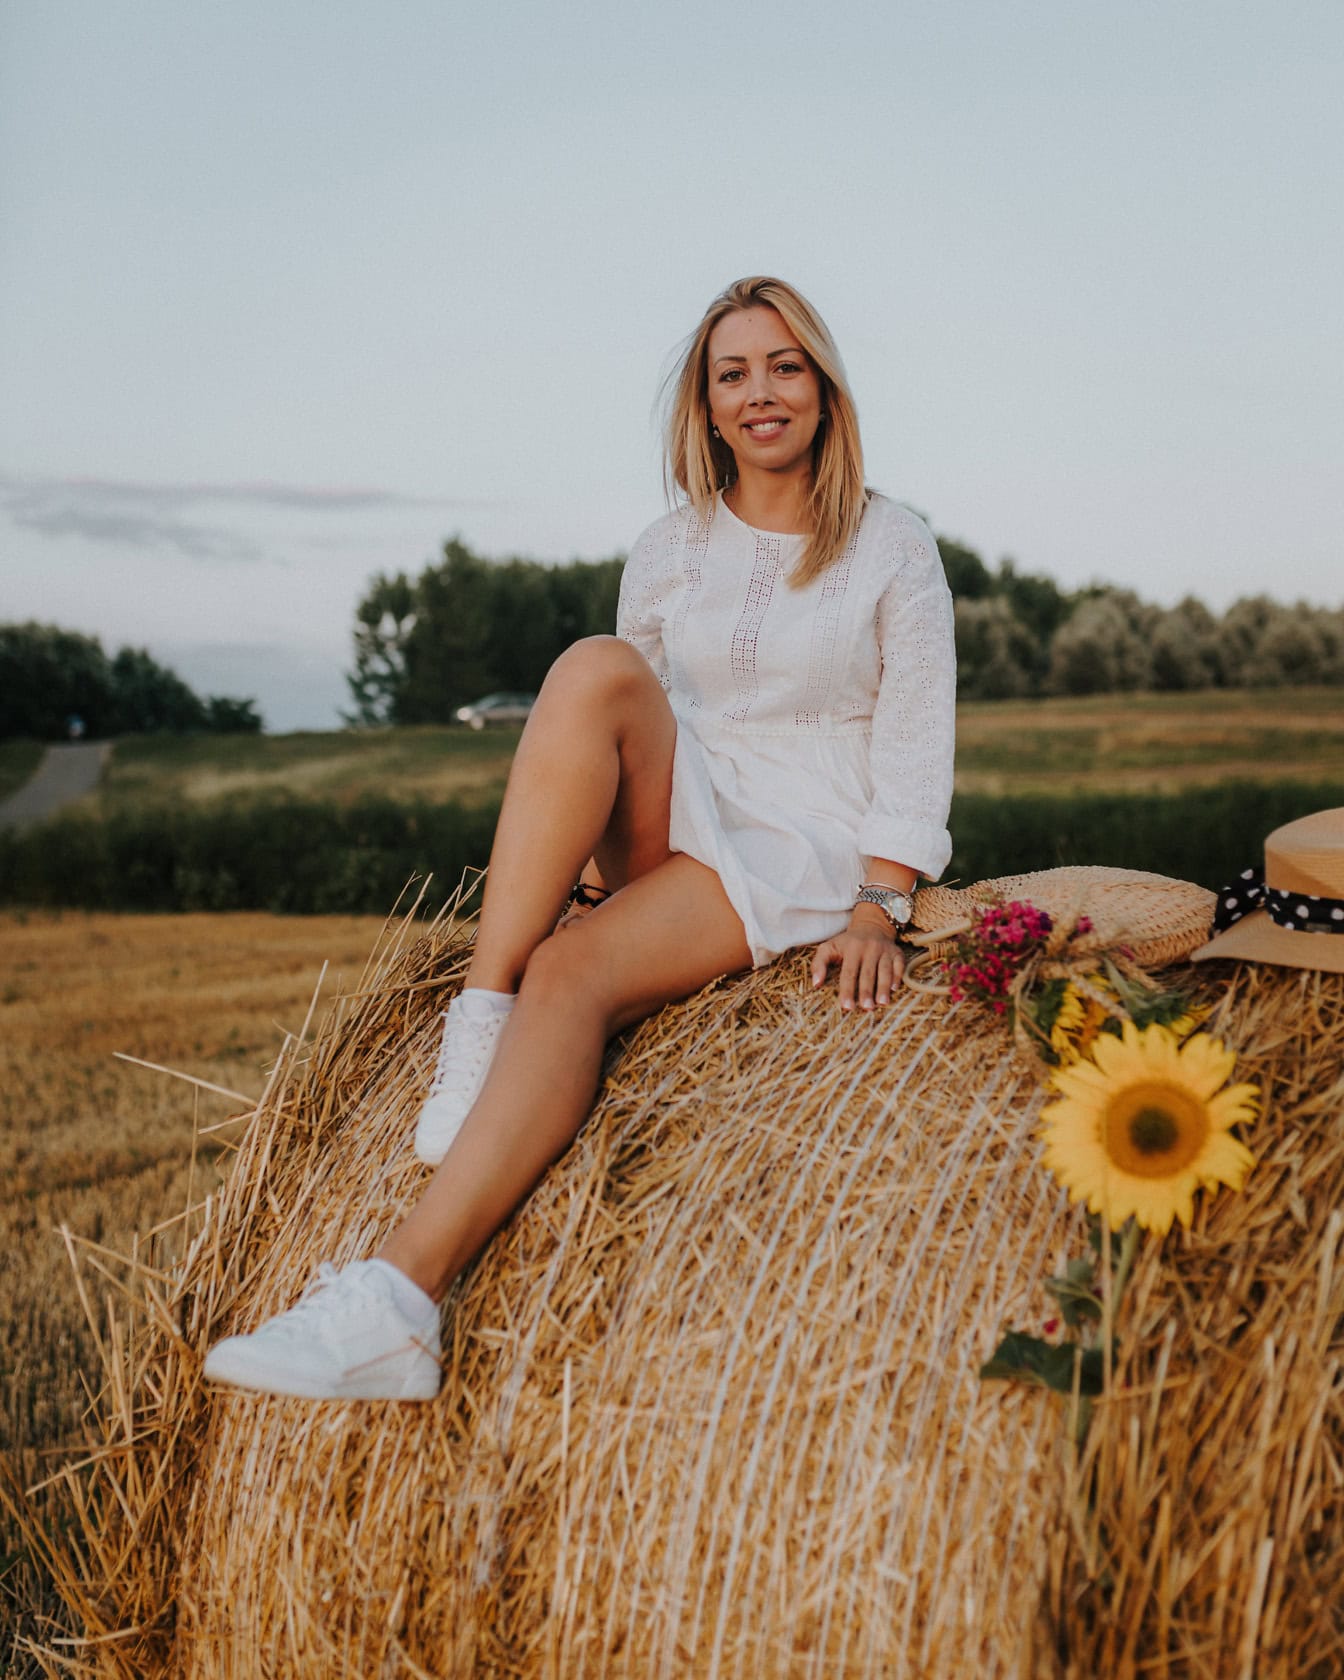 Wspaniała uśmiechnięta blondynka siedząca na stogu siana w białej wiejskiej sukience